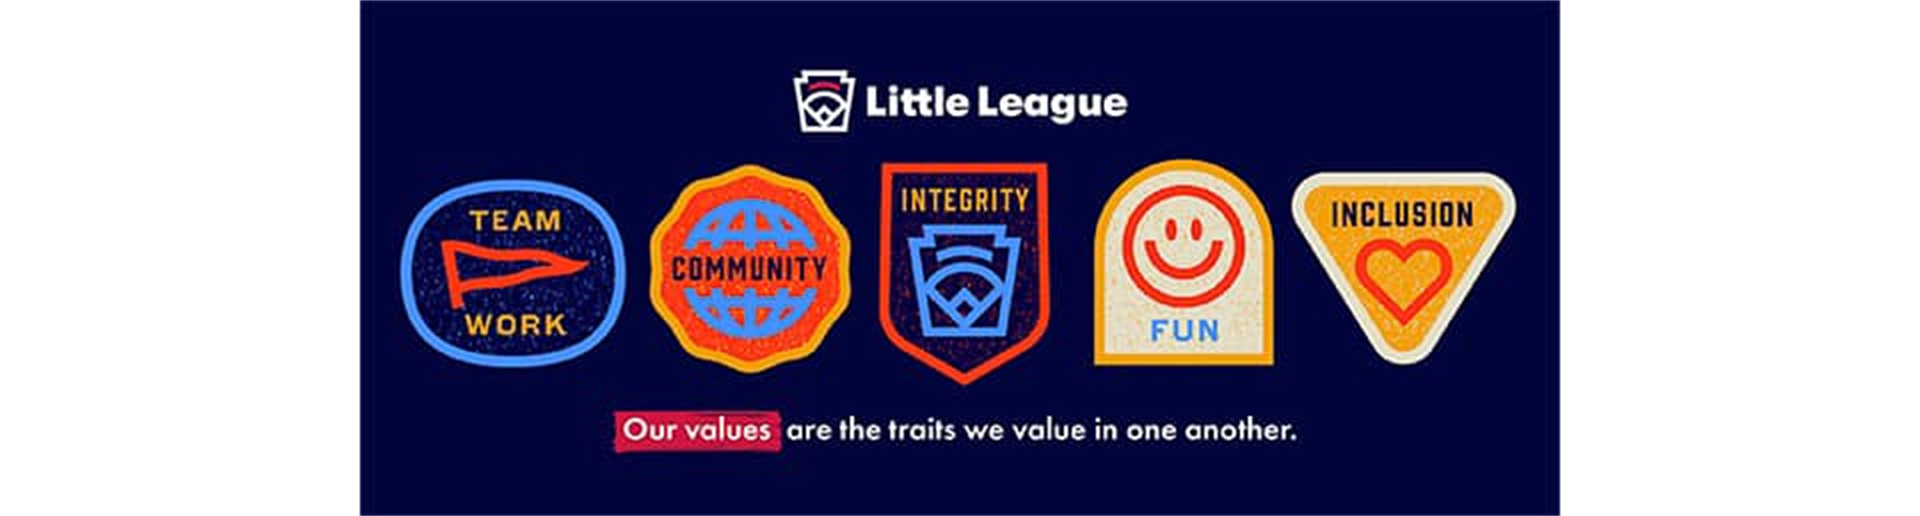 Little League Values 